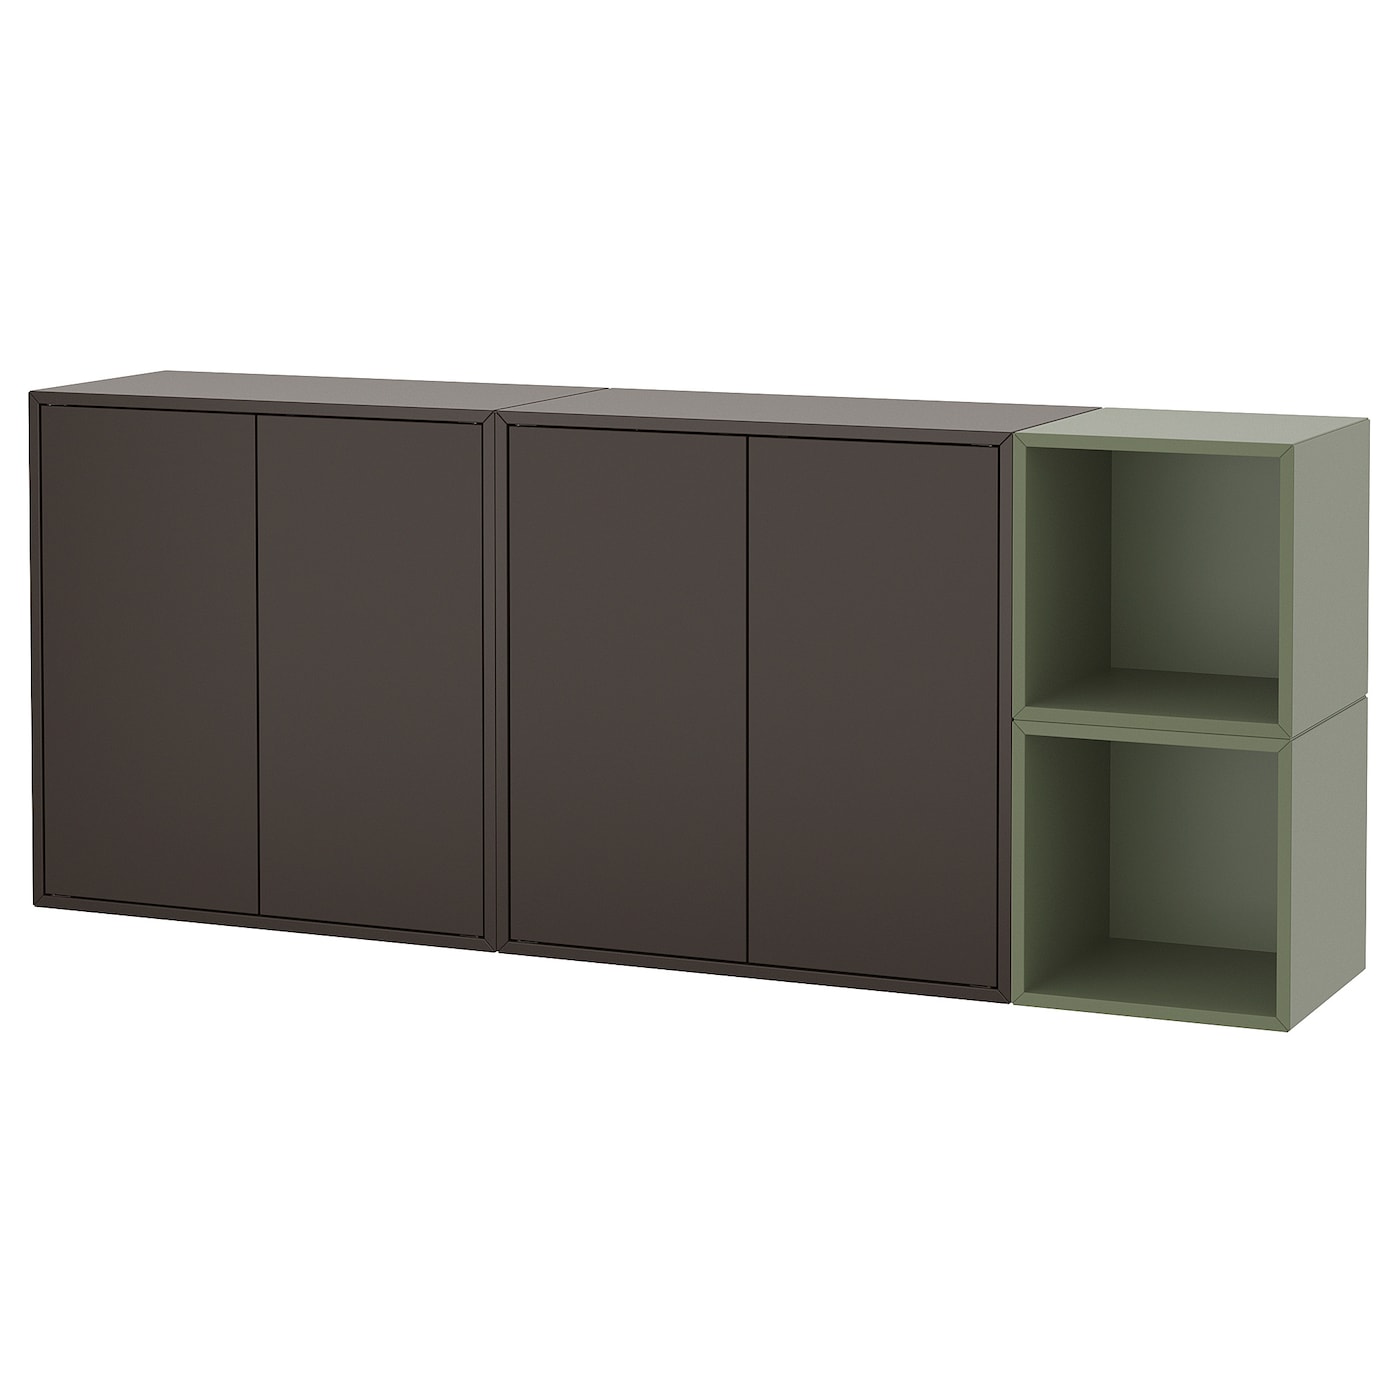 Комбинация для хранения - EKET IKEA/ ЭКЕТ ИКЕА,  175х70 см,   коричневый/зеленый